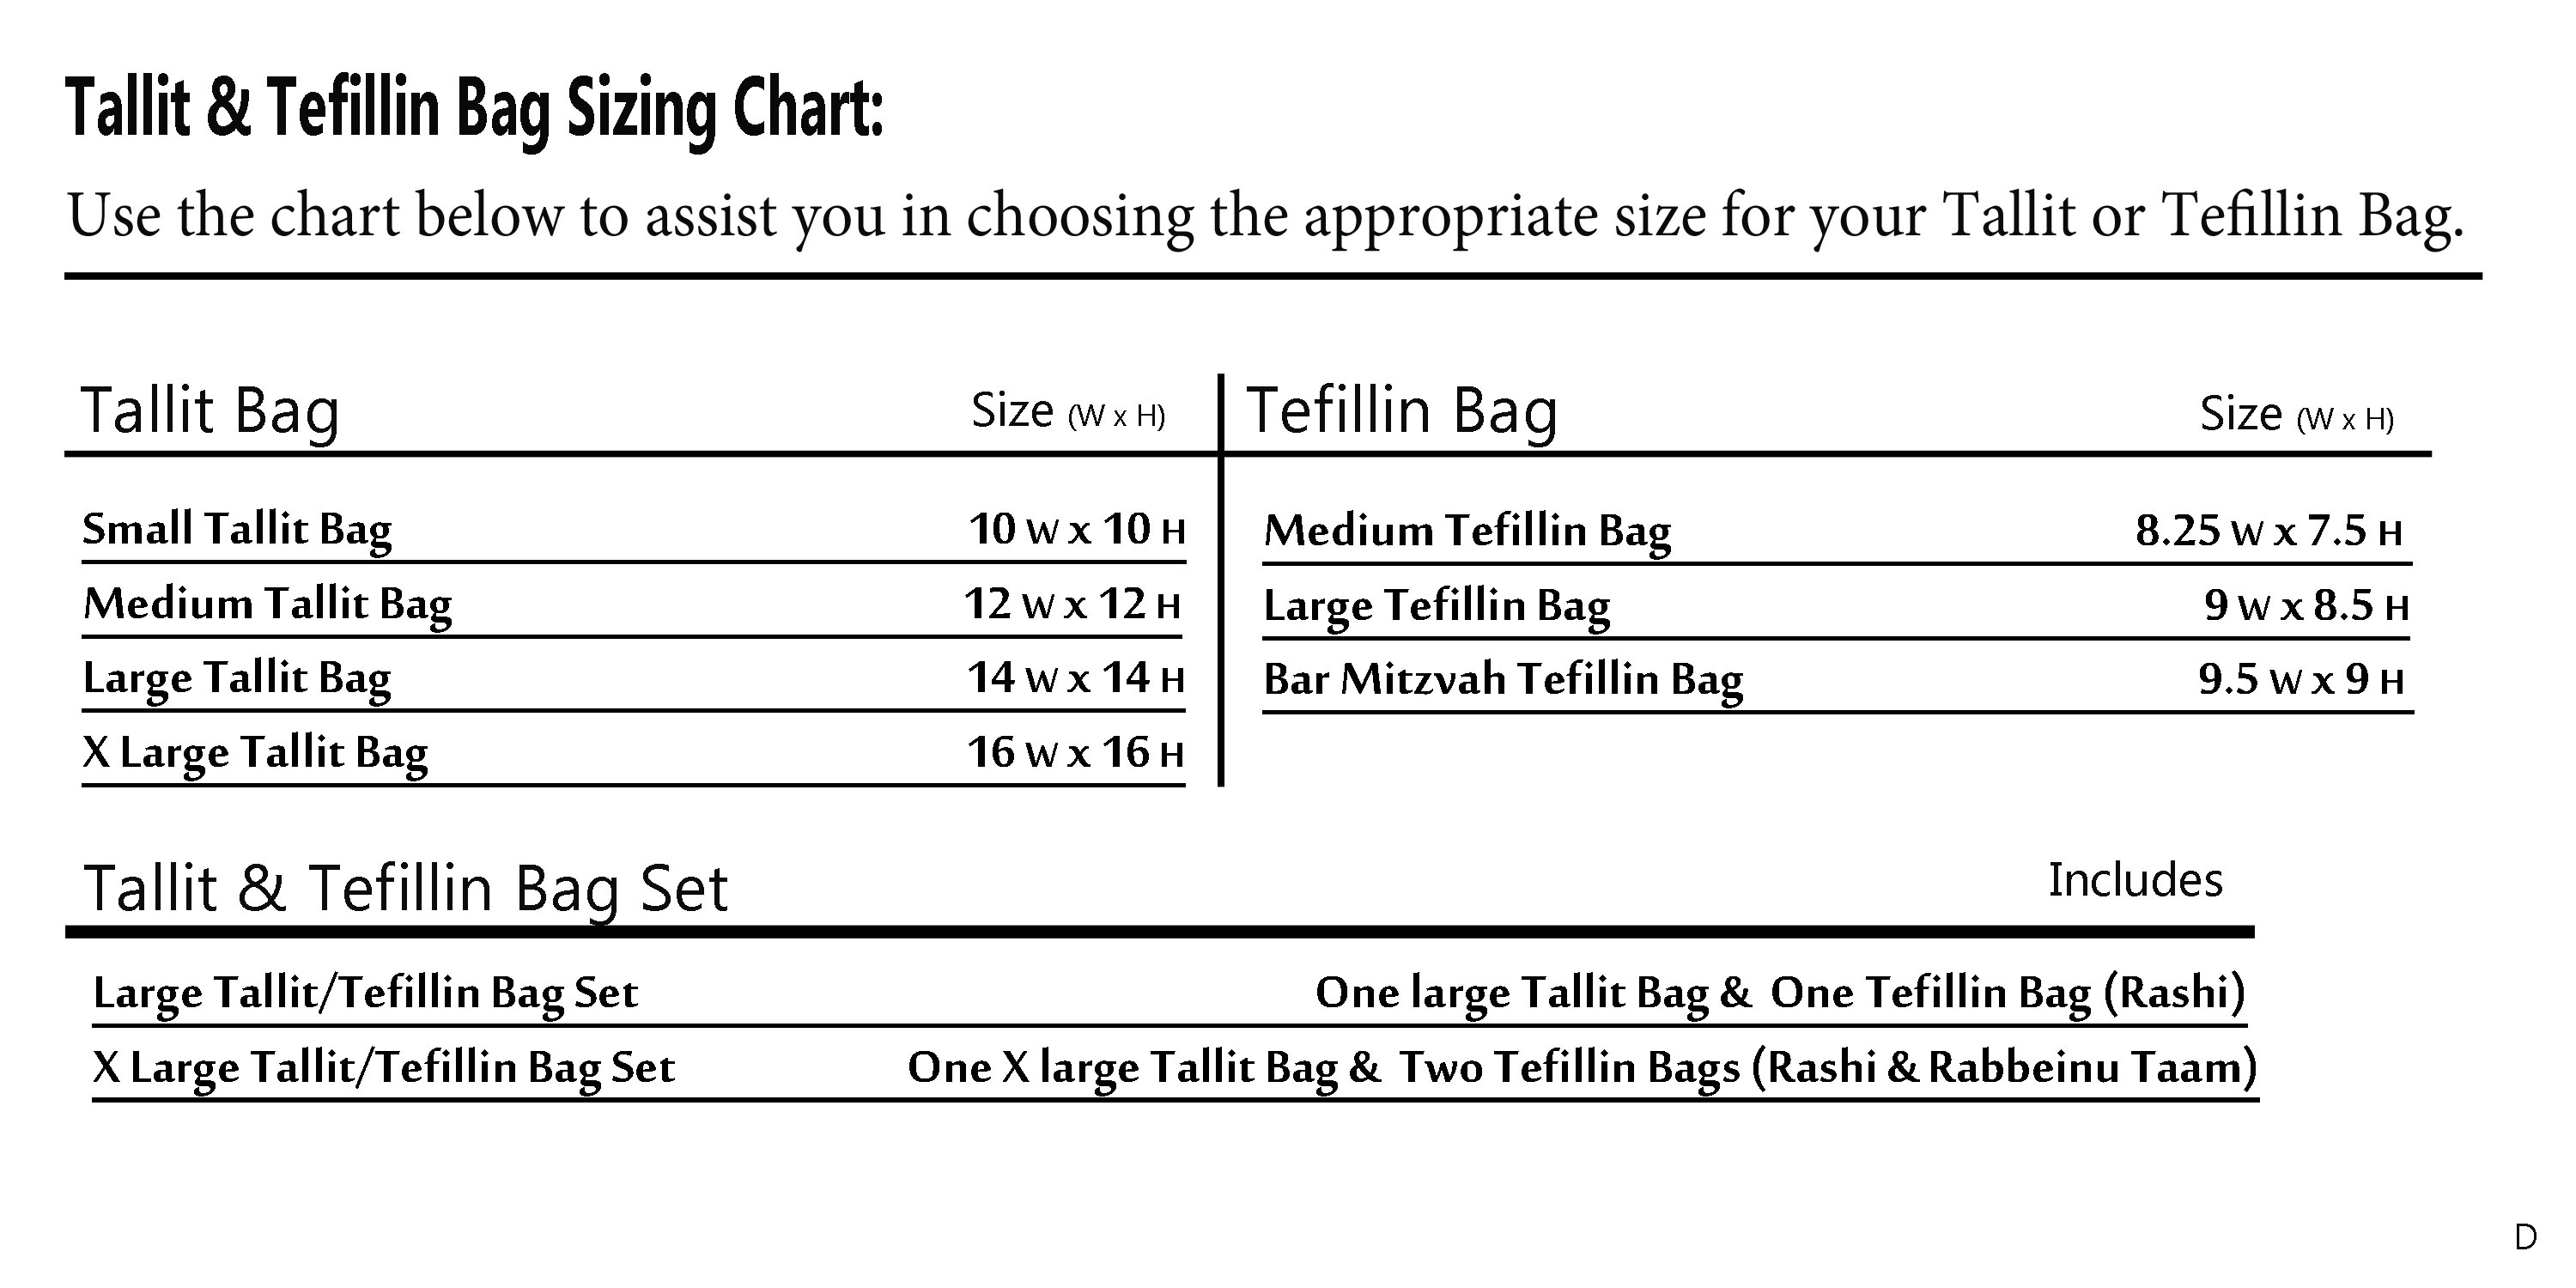 tallit bag size chart-D.jpg